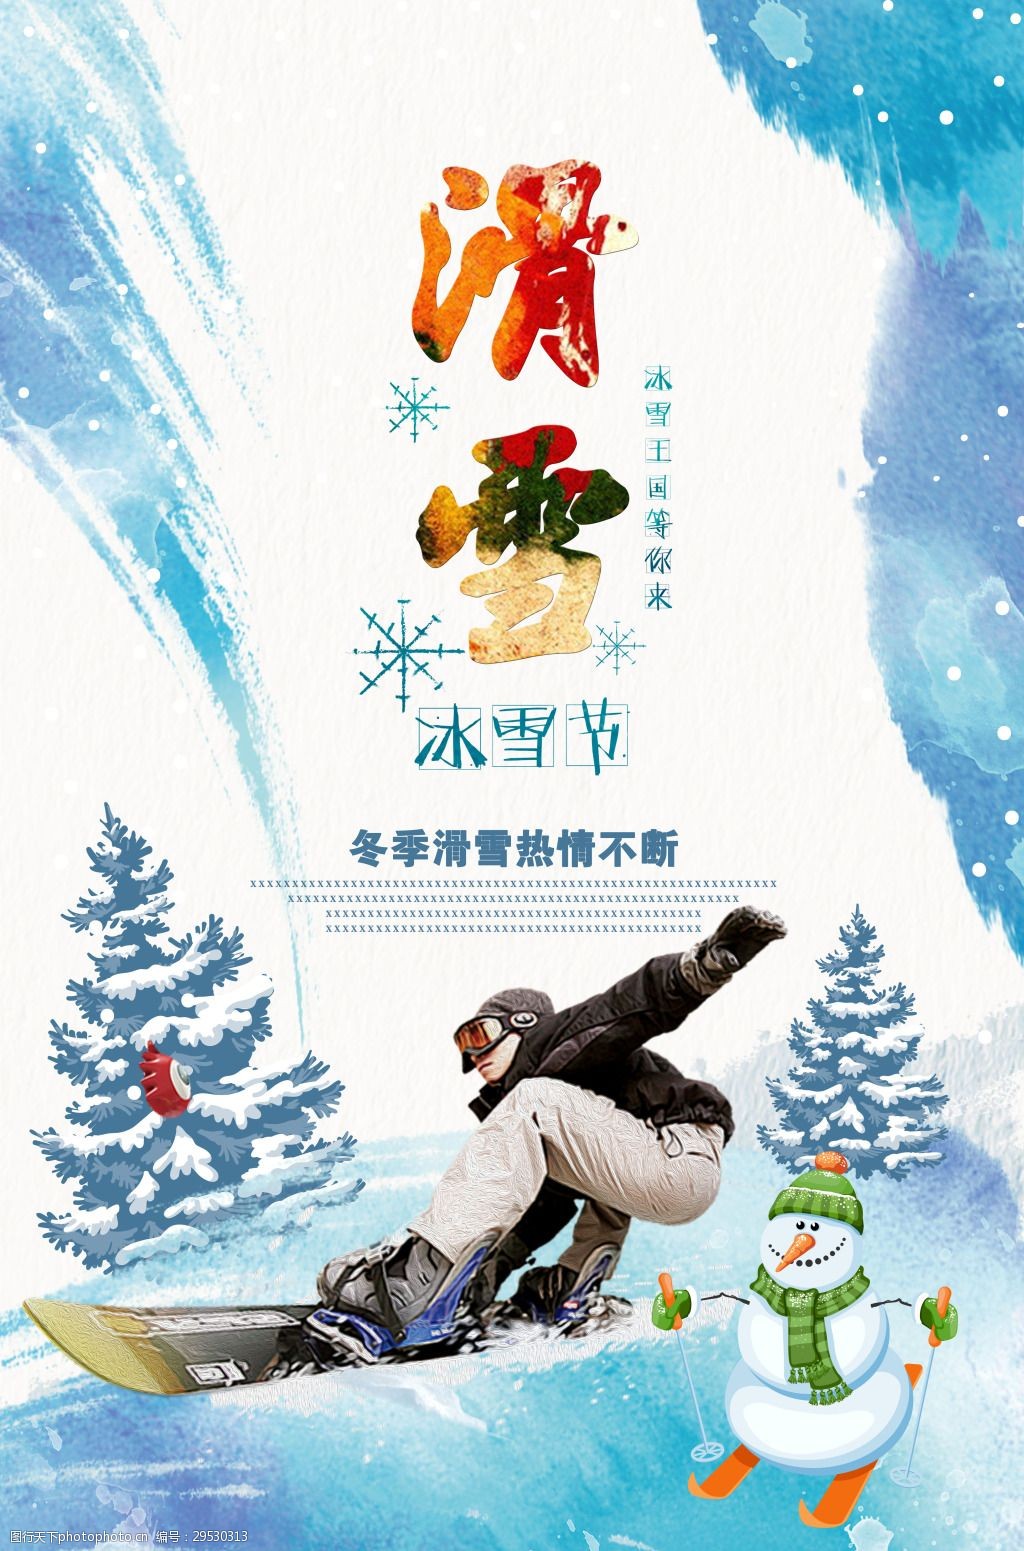 校园冰雪文化节海报图片